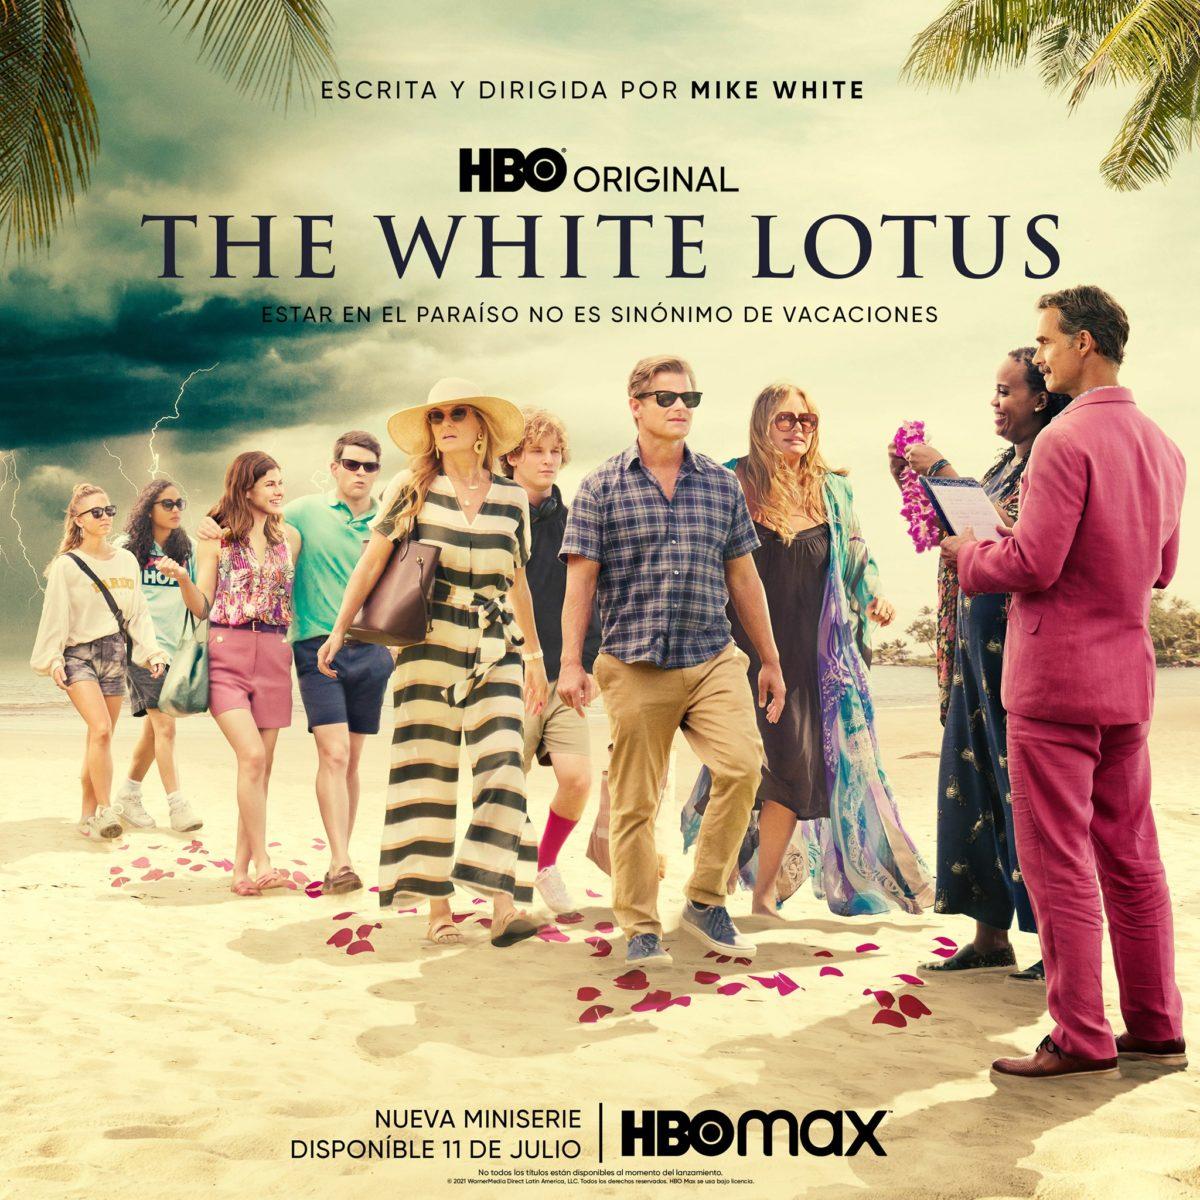 The White Lotus, una serie refrescante